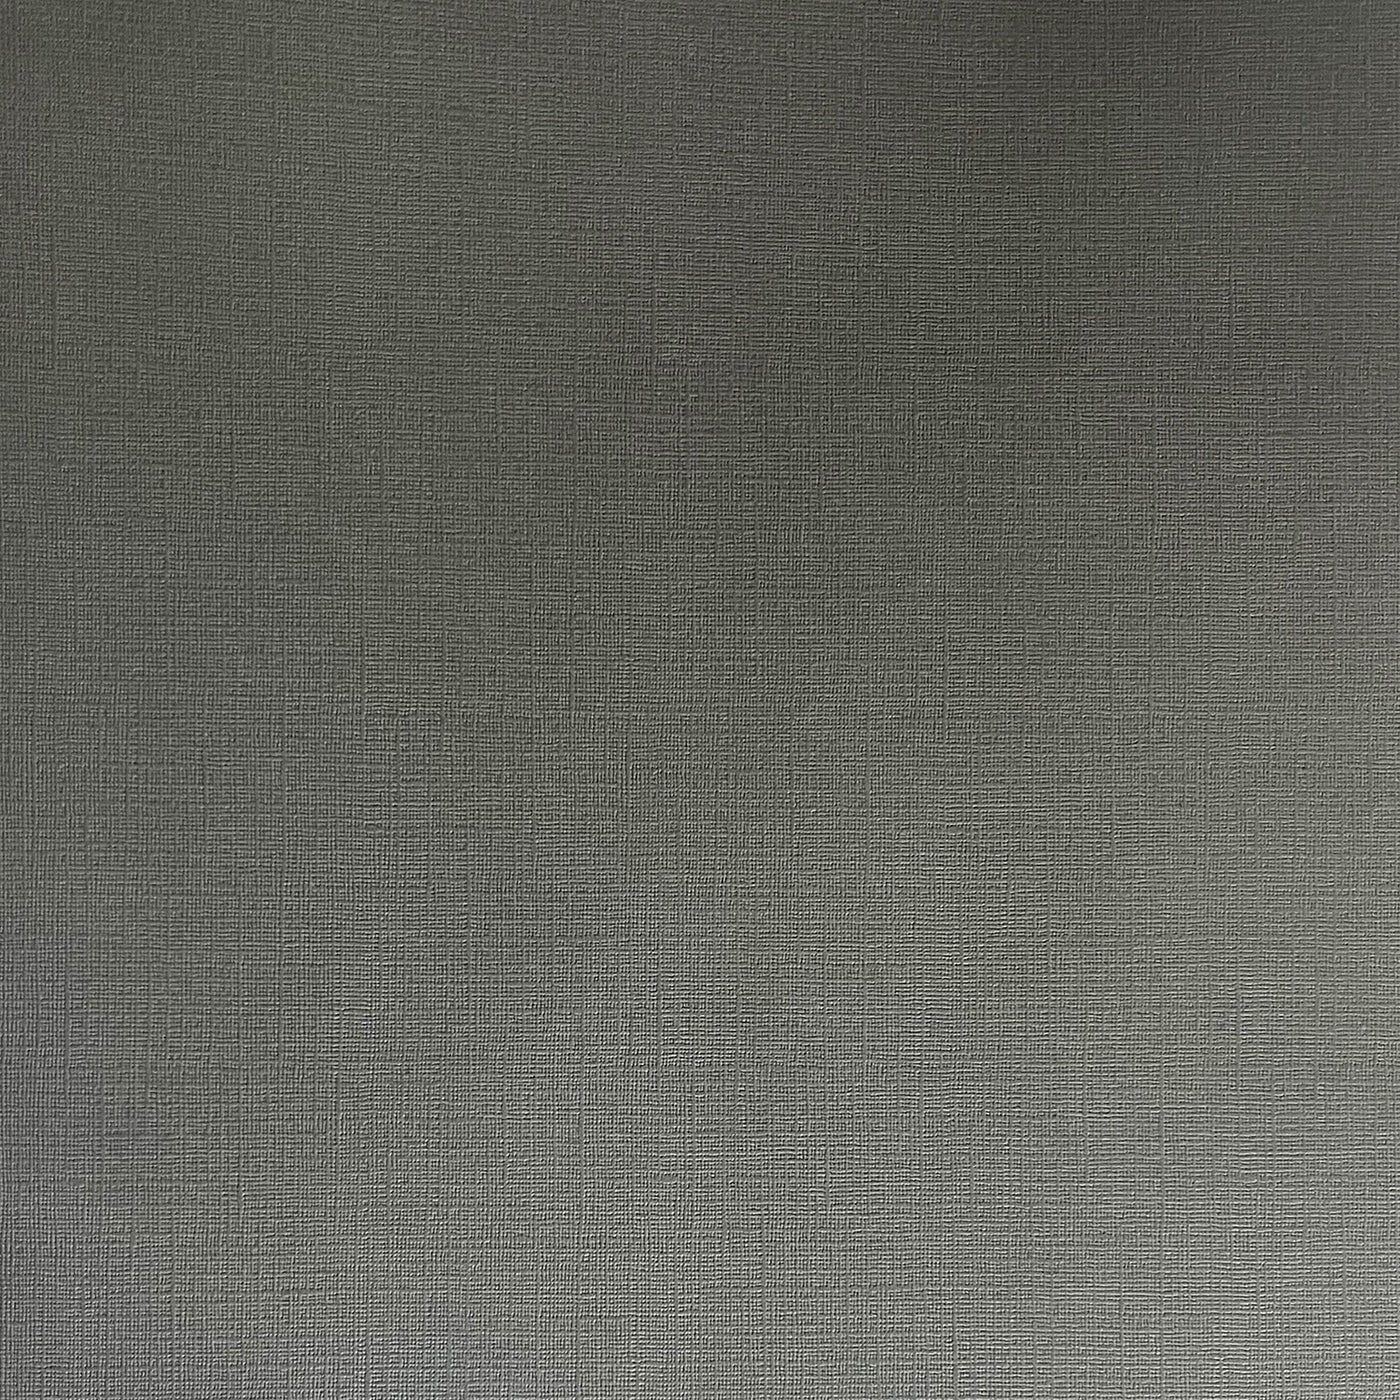 Charcoal - Textured 12x12 Cardstock - dark gray canvas scrapbook paper